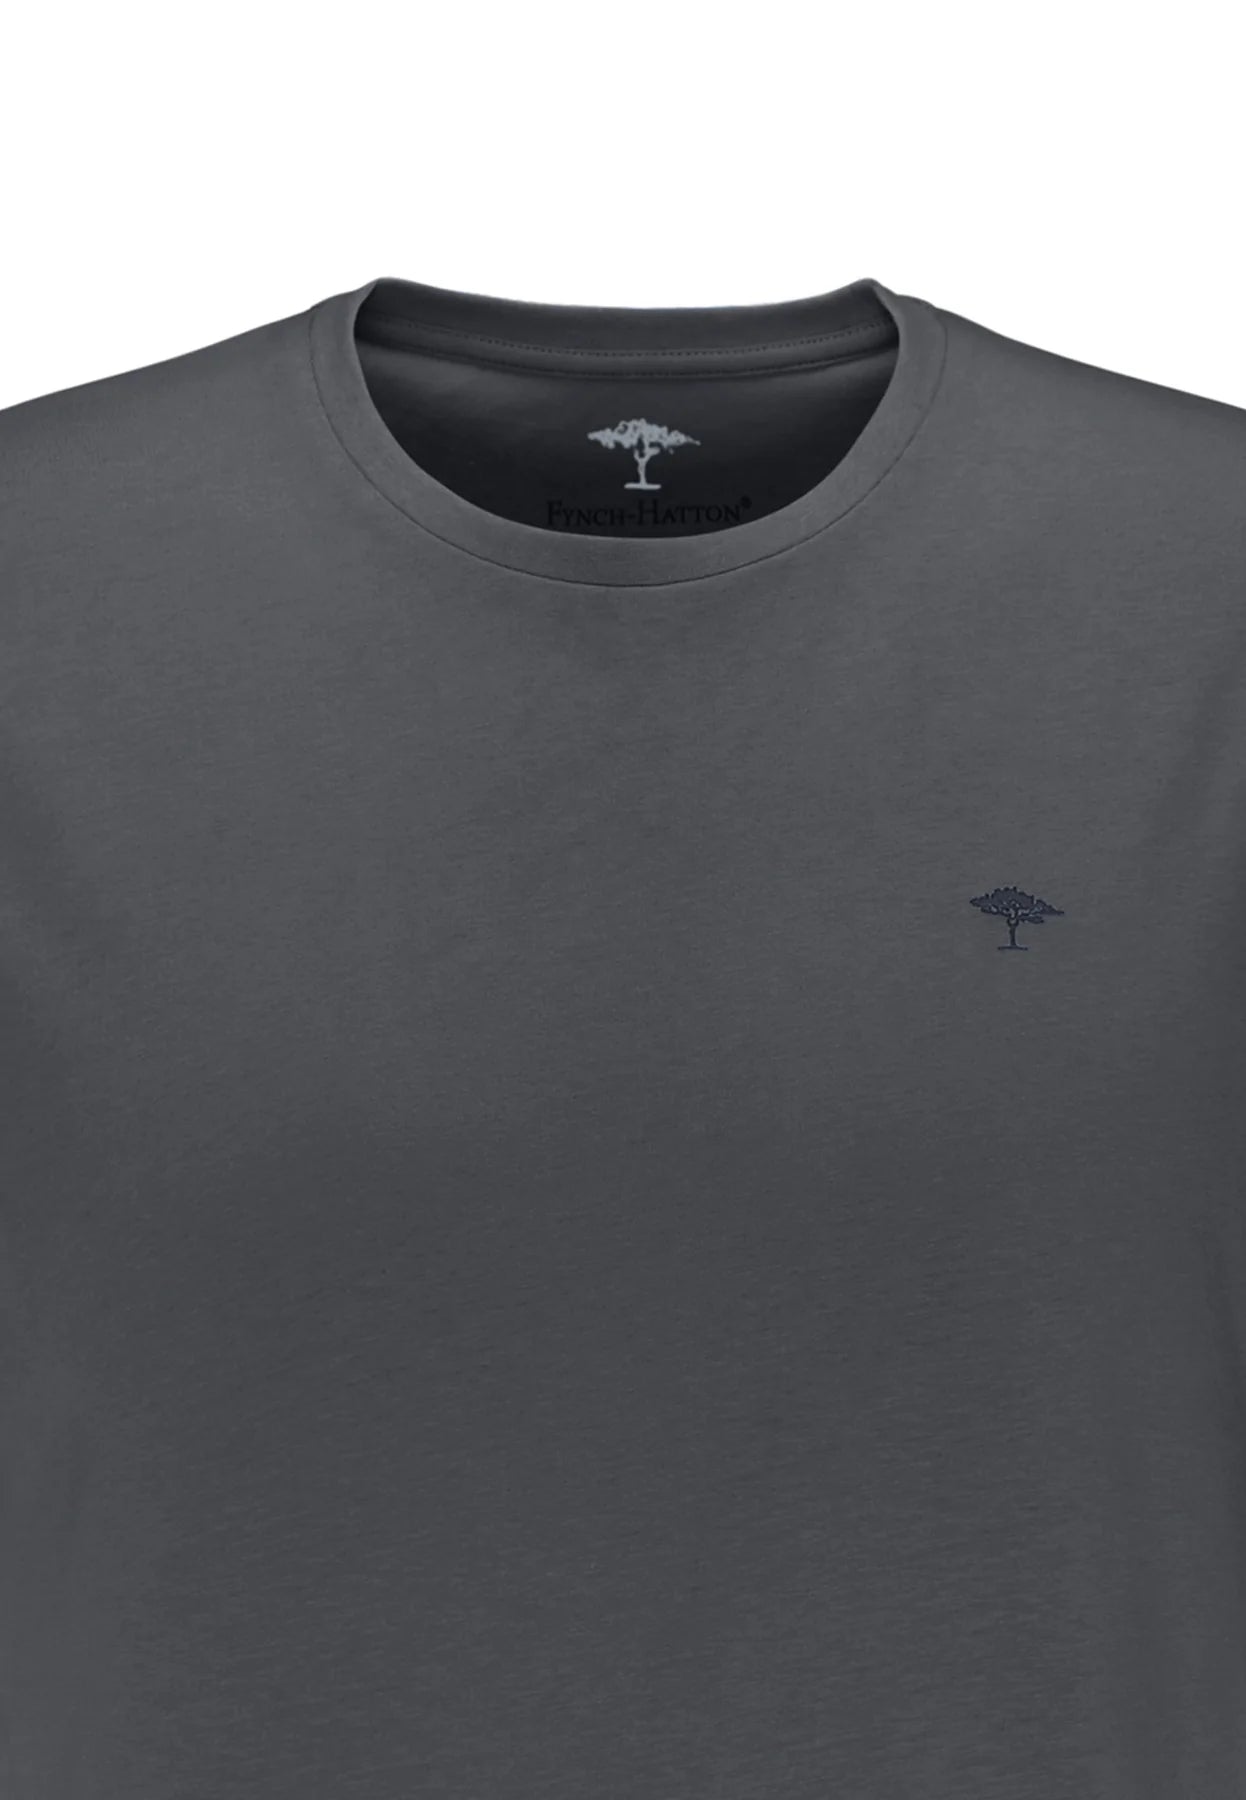 Fynch Hatton Grey Round Neck Asphalt Grey T-Shirt